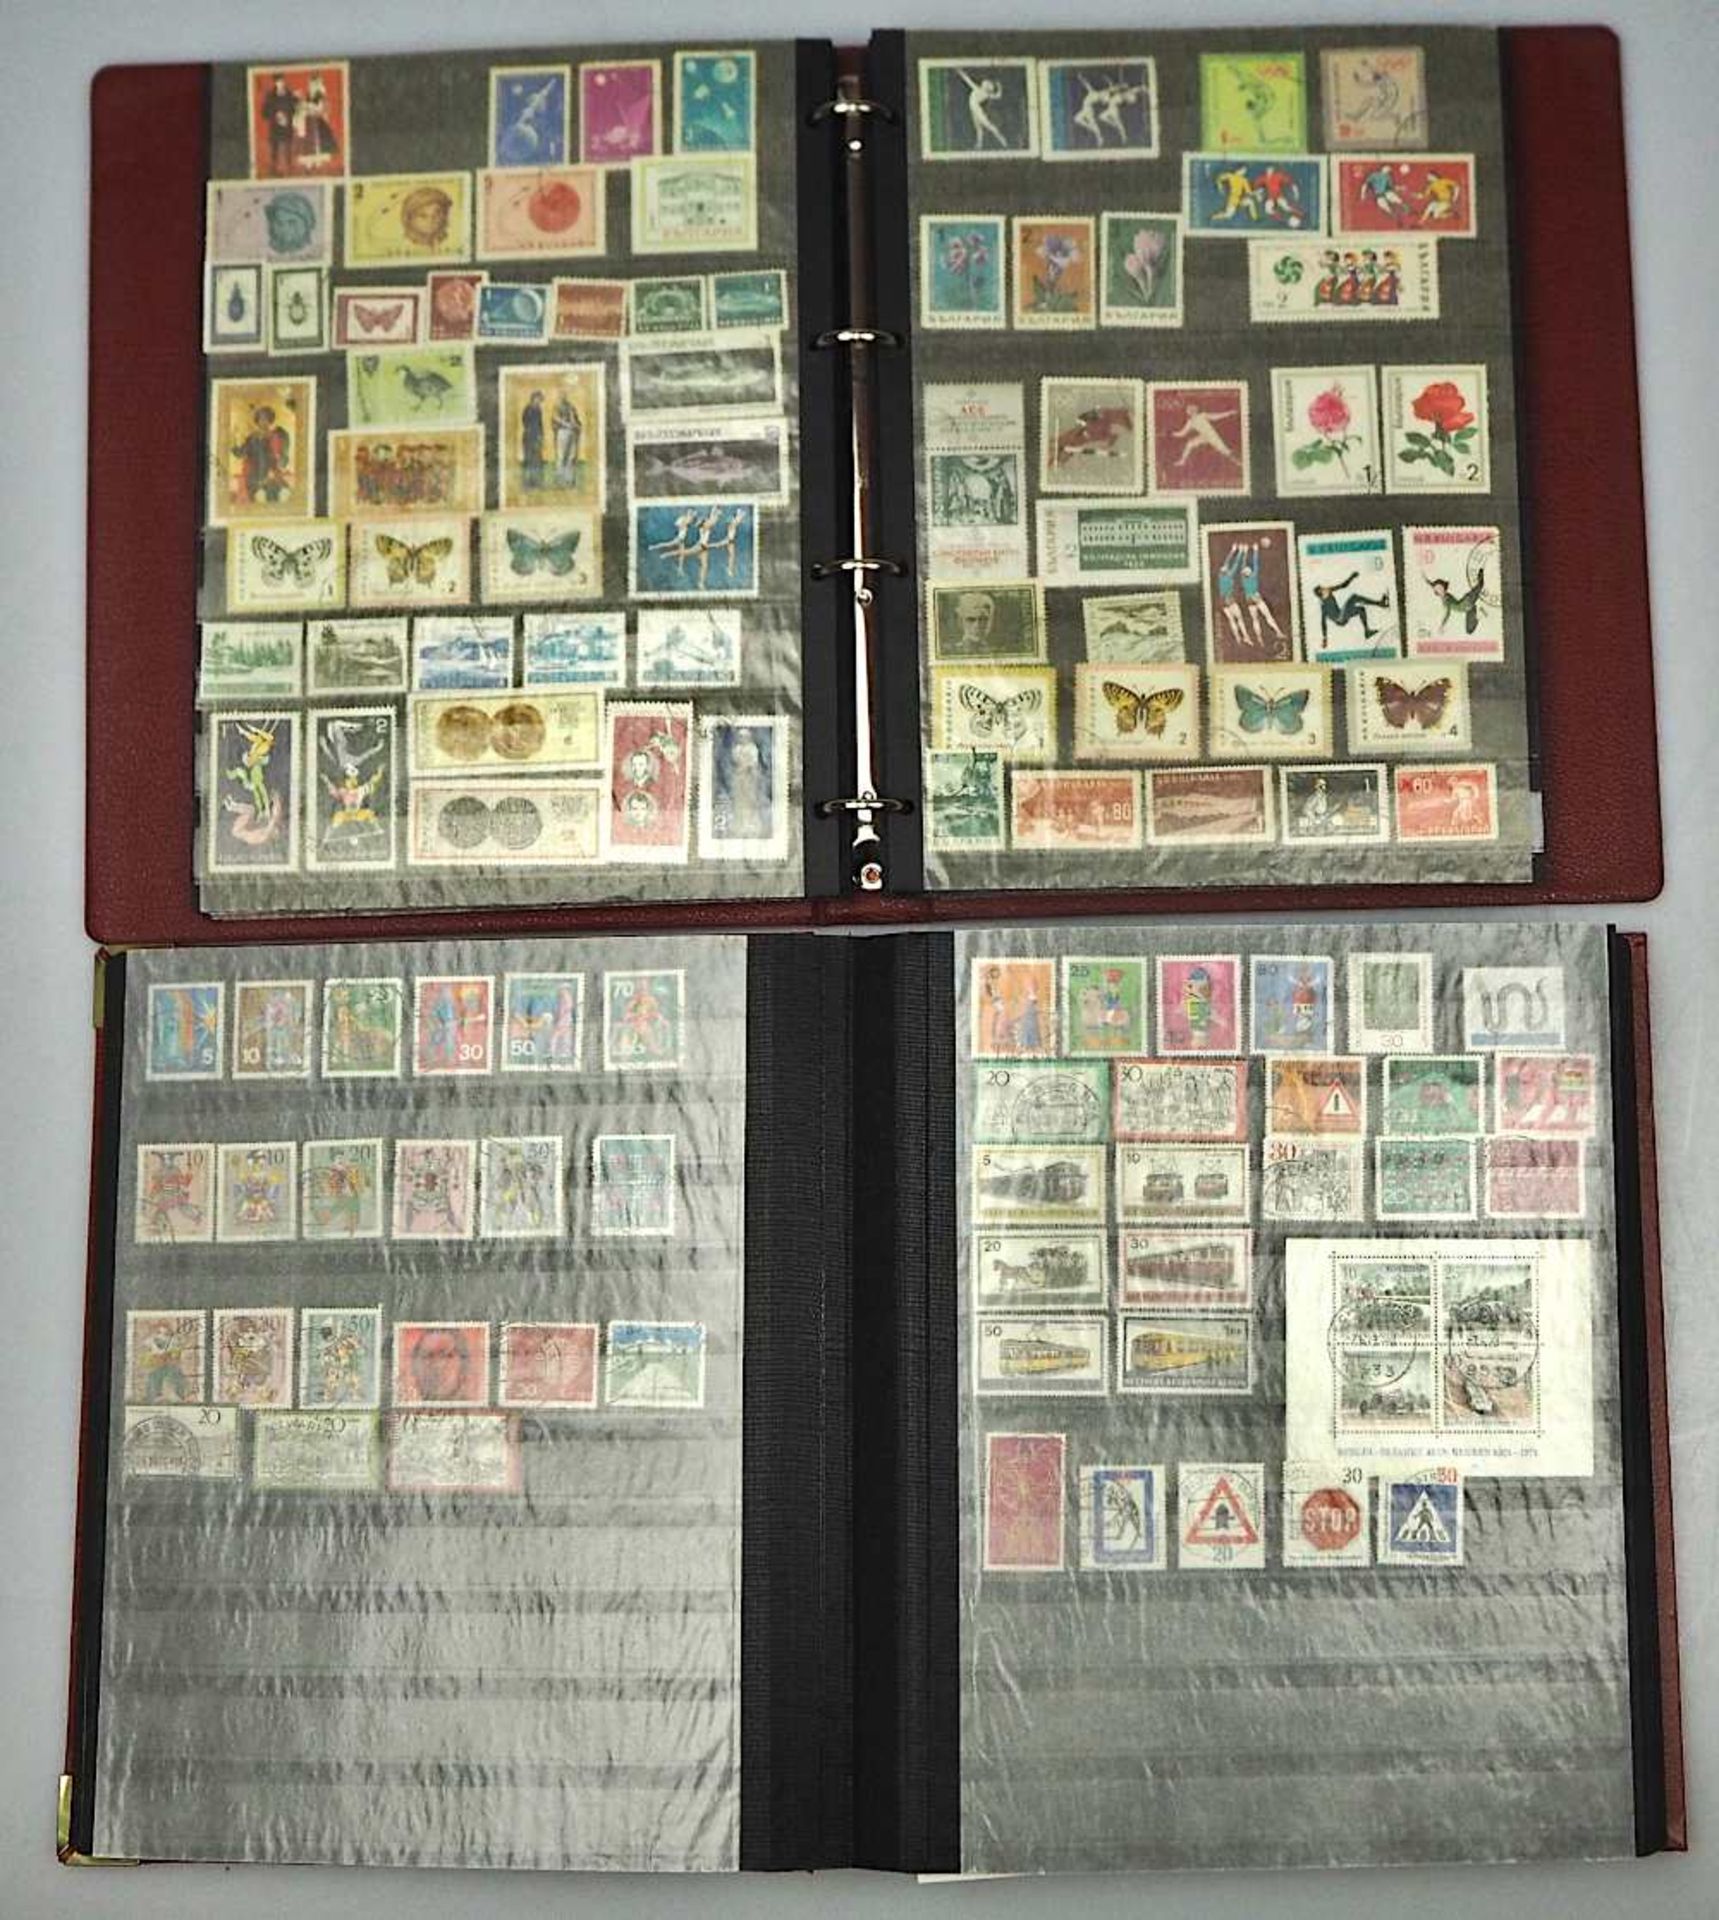 1 Konv. Briefmarken in 4 Alben: Deutsches Reich, BRD, DDR, 3. Reich, Alle Welt sowie 1 - Image 3 of 3